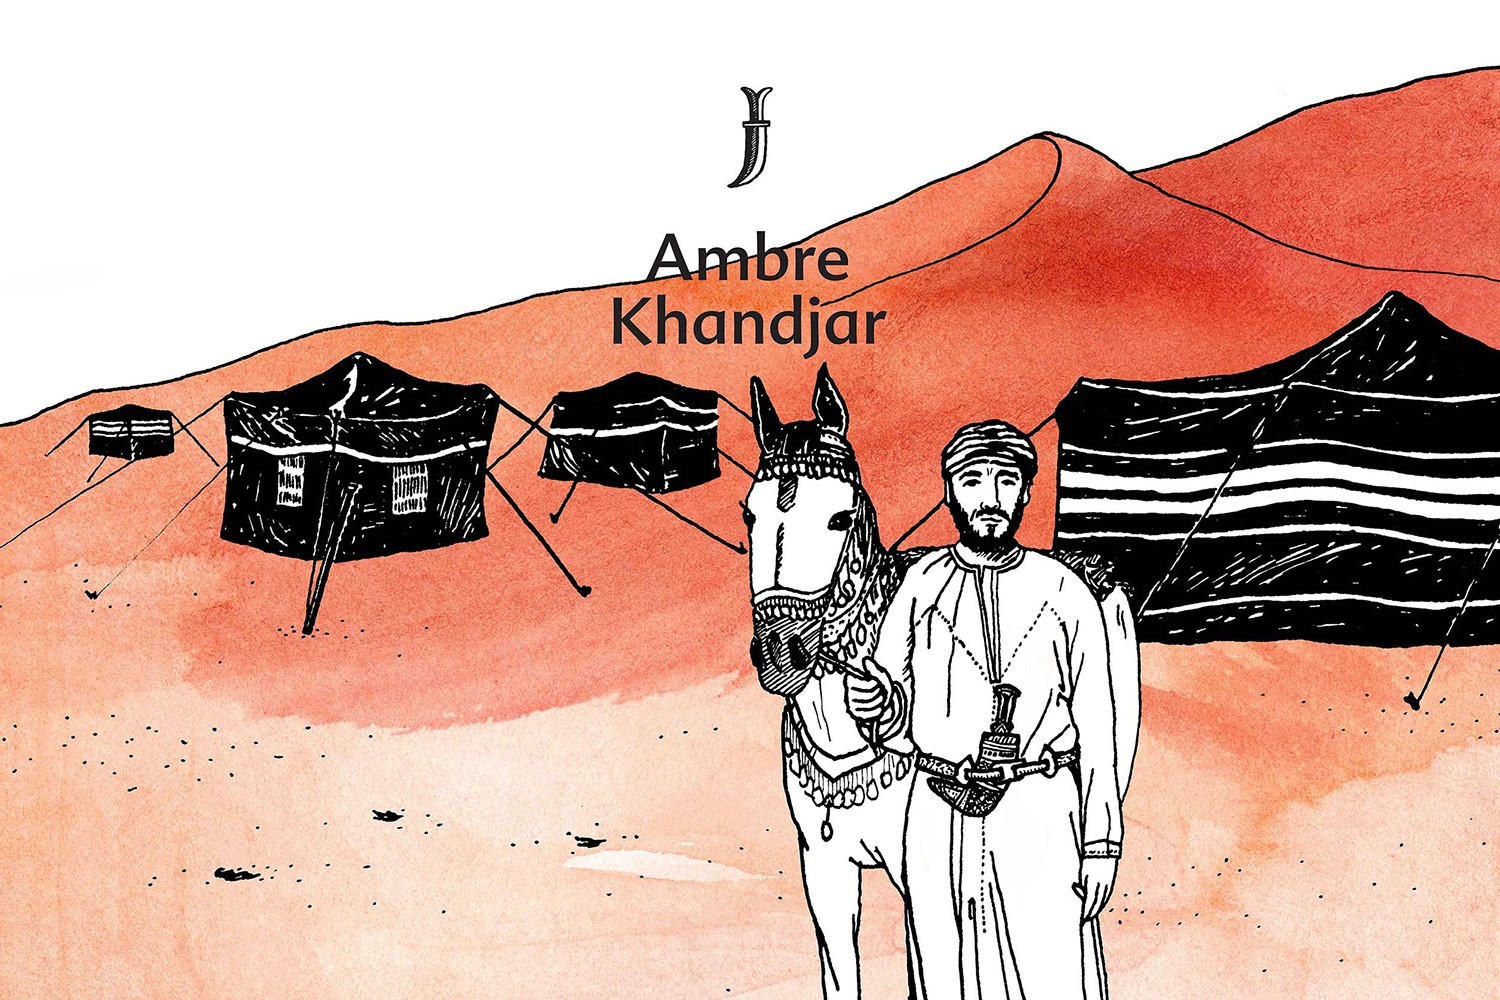 Ambre Khandjar